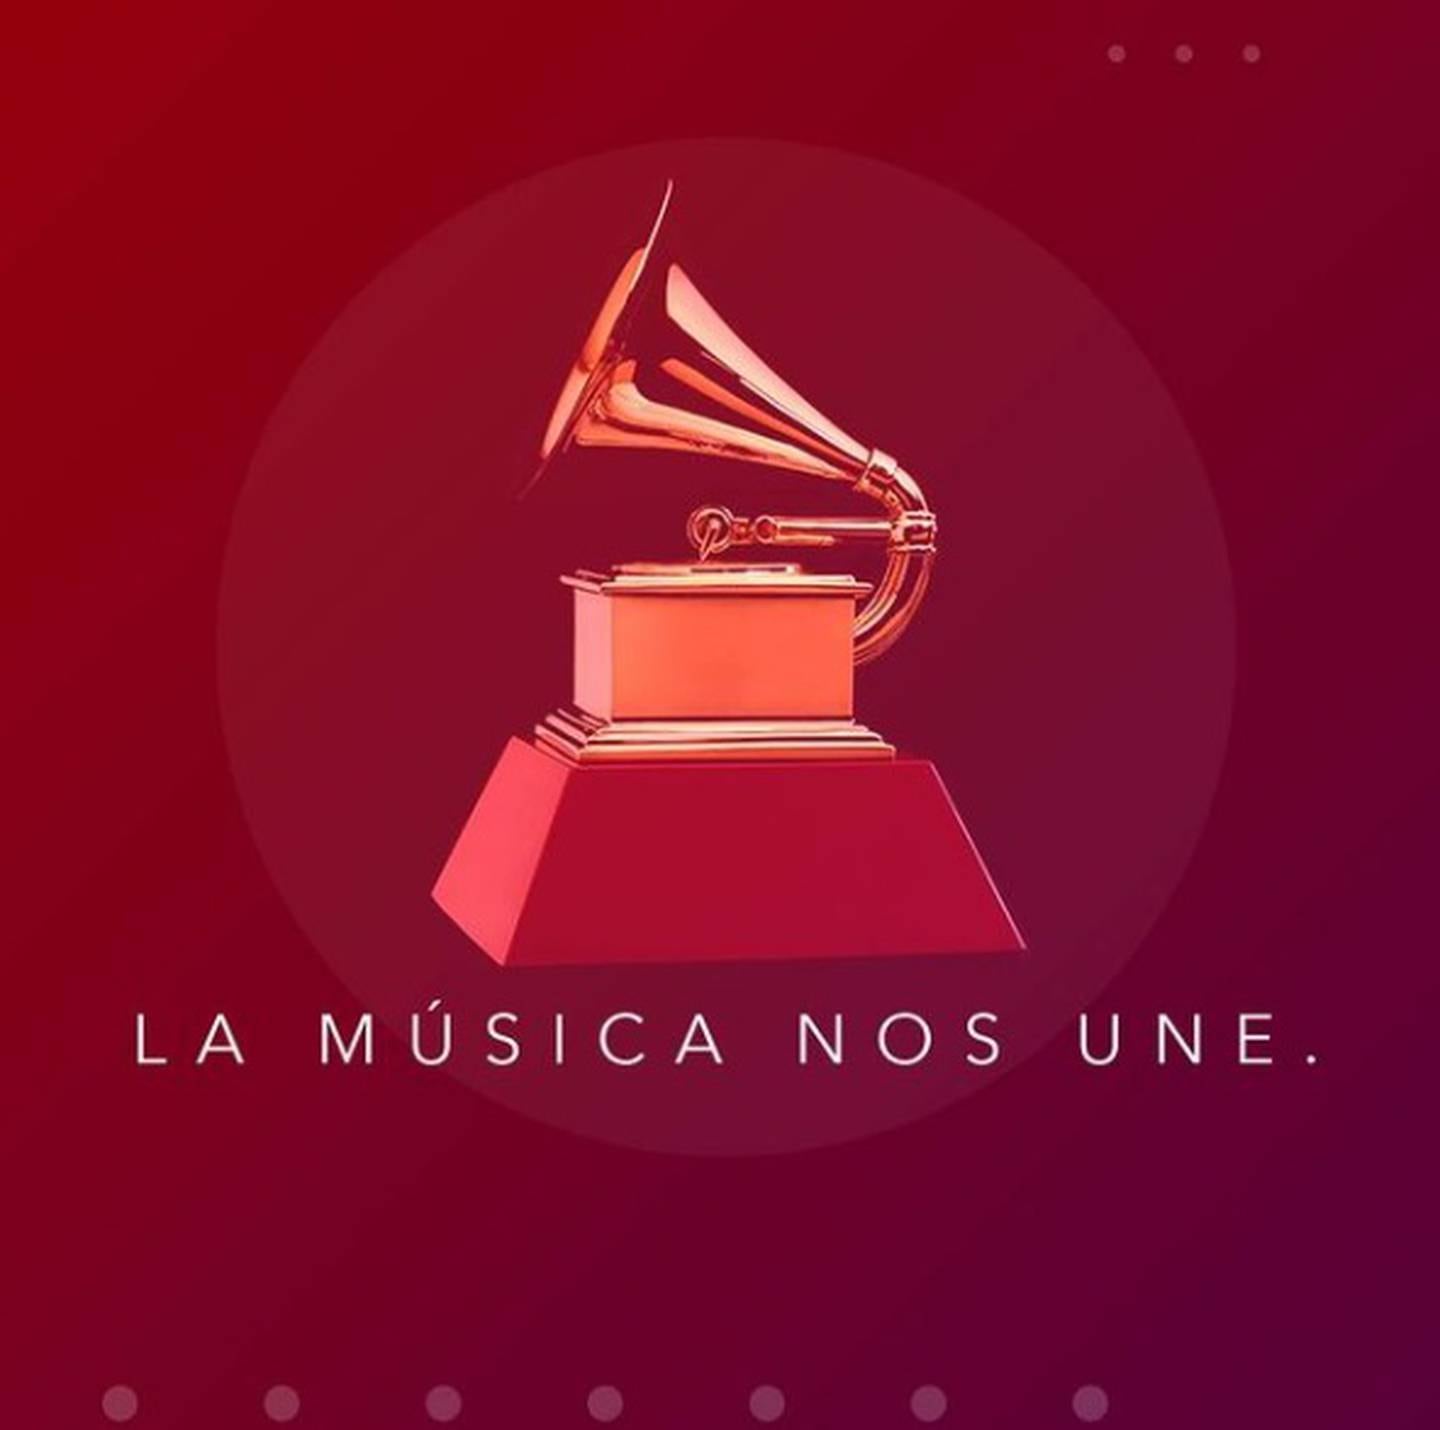 Los nominados a los Latin Grammy 2021 se dieron a conocer hace un par de semanas y ahora te diremos cuándo y dónde ver la ceremonia en vivo.